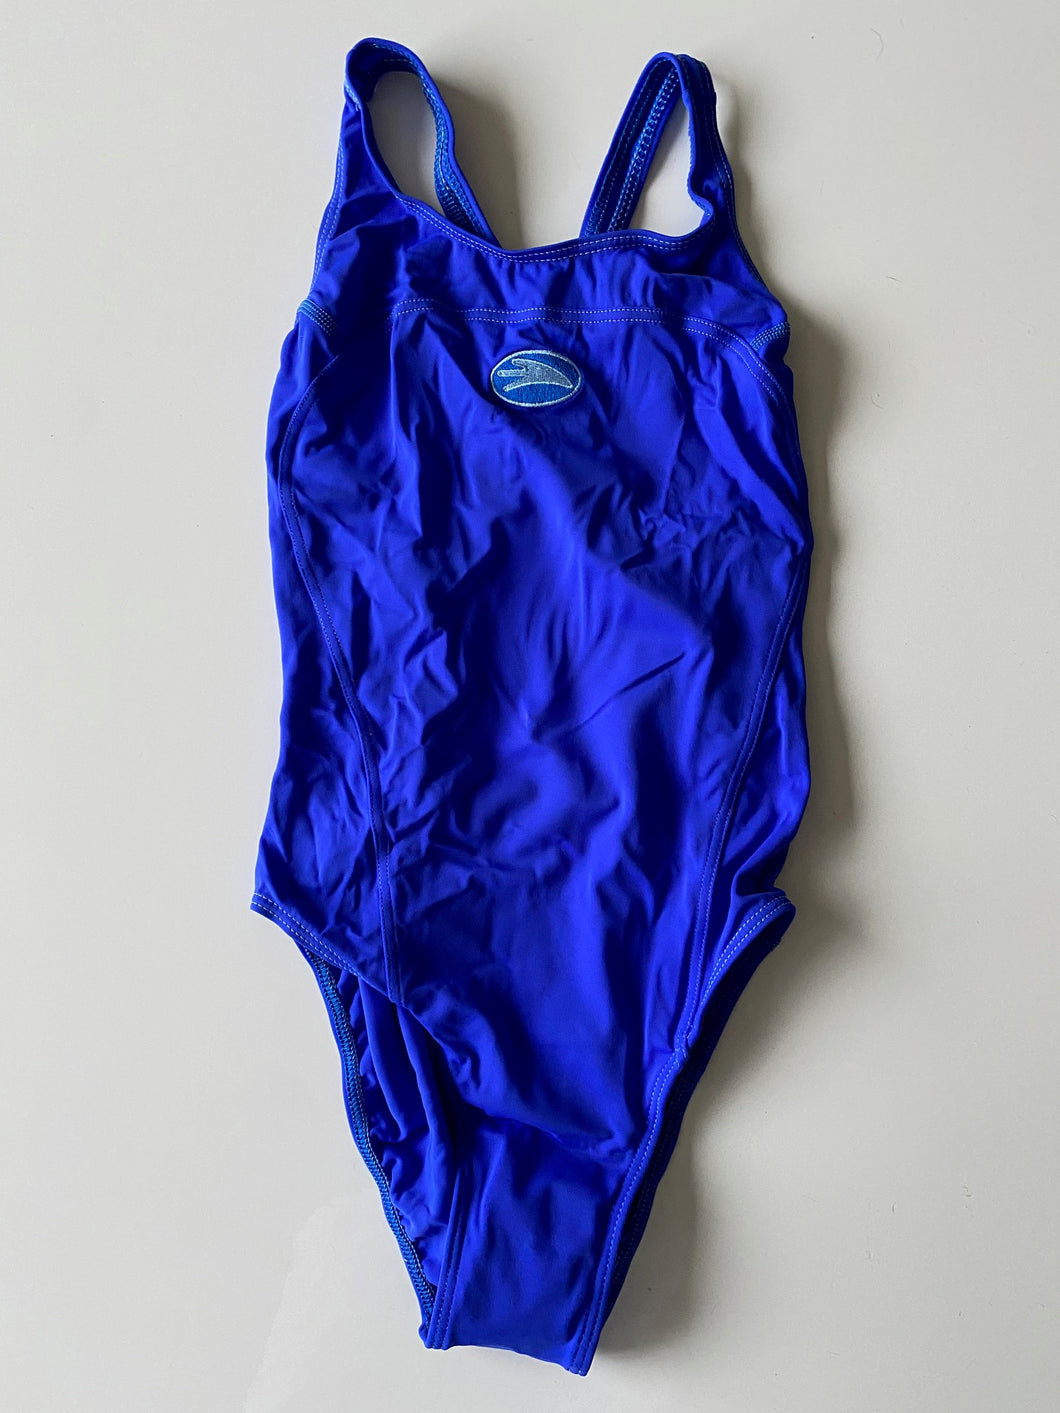 WSLS - Swimming costume - Fauzia